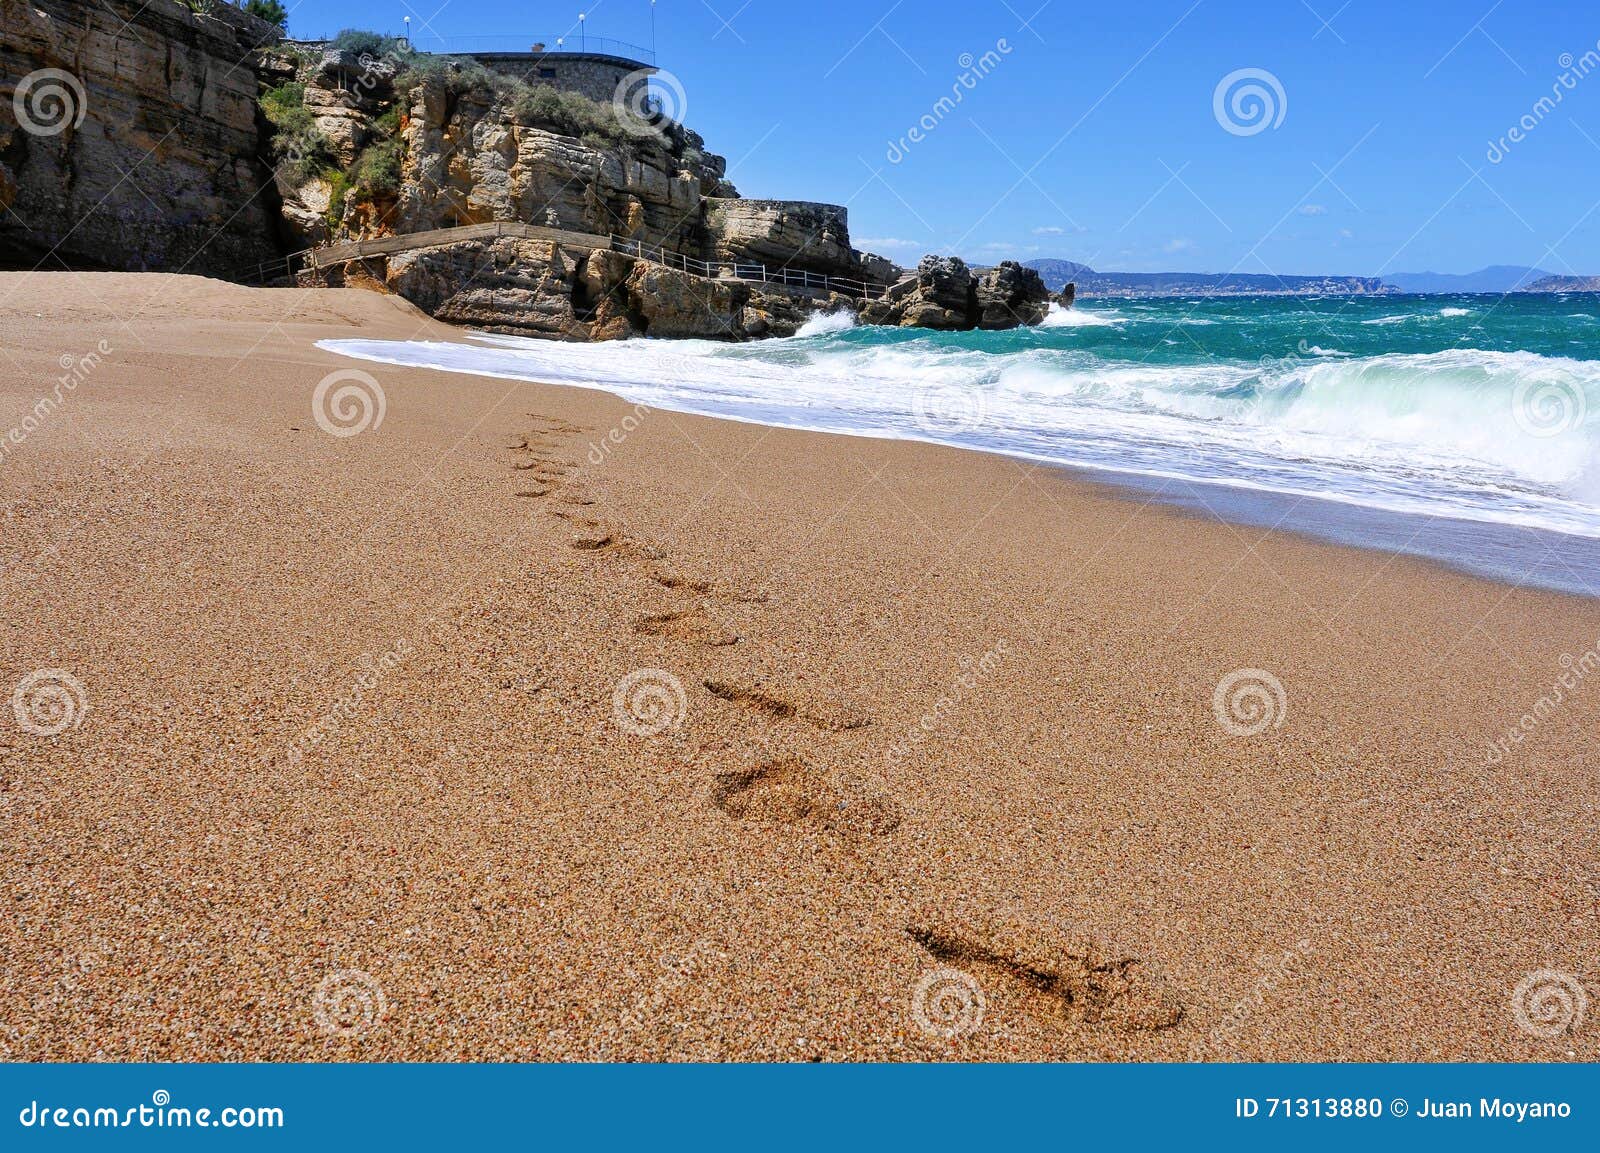 cala illa roja beach in the costa brava, in catalonia, spain